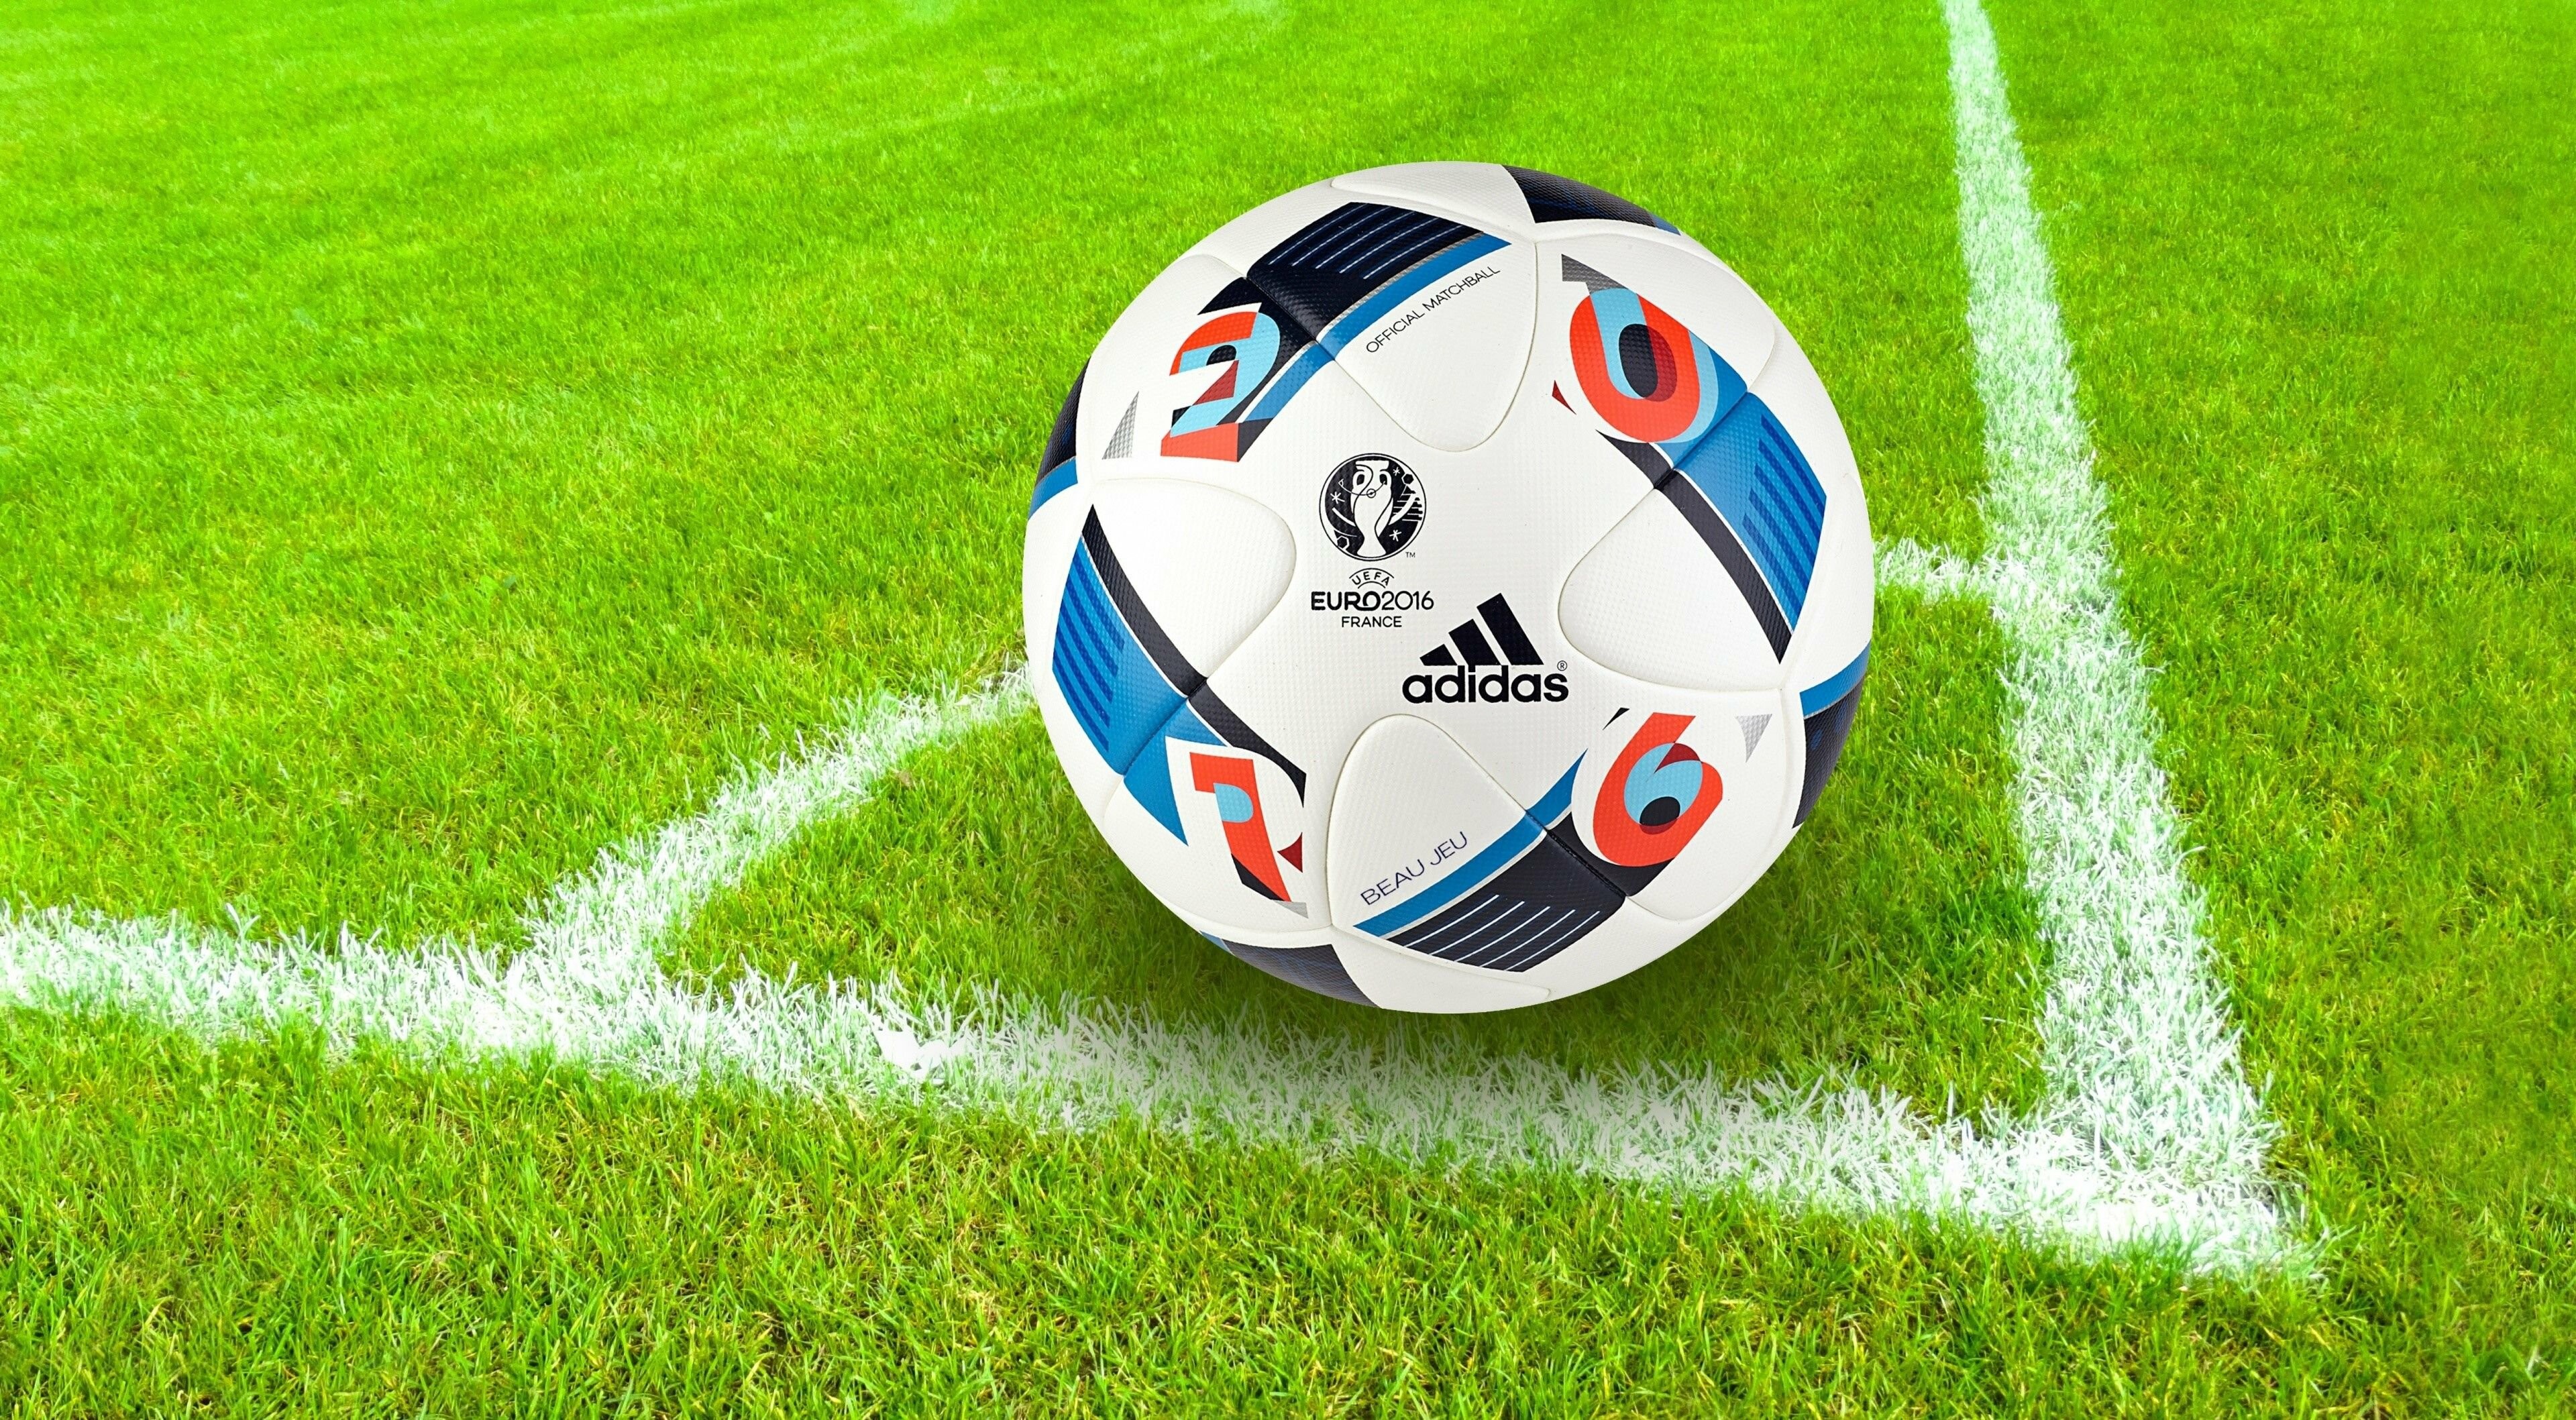 Soccer Sports, 4K Ultra HD wallpapers, Football fandom, 3840x2120 HD Desktop